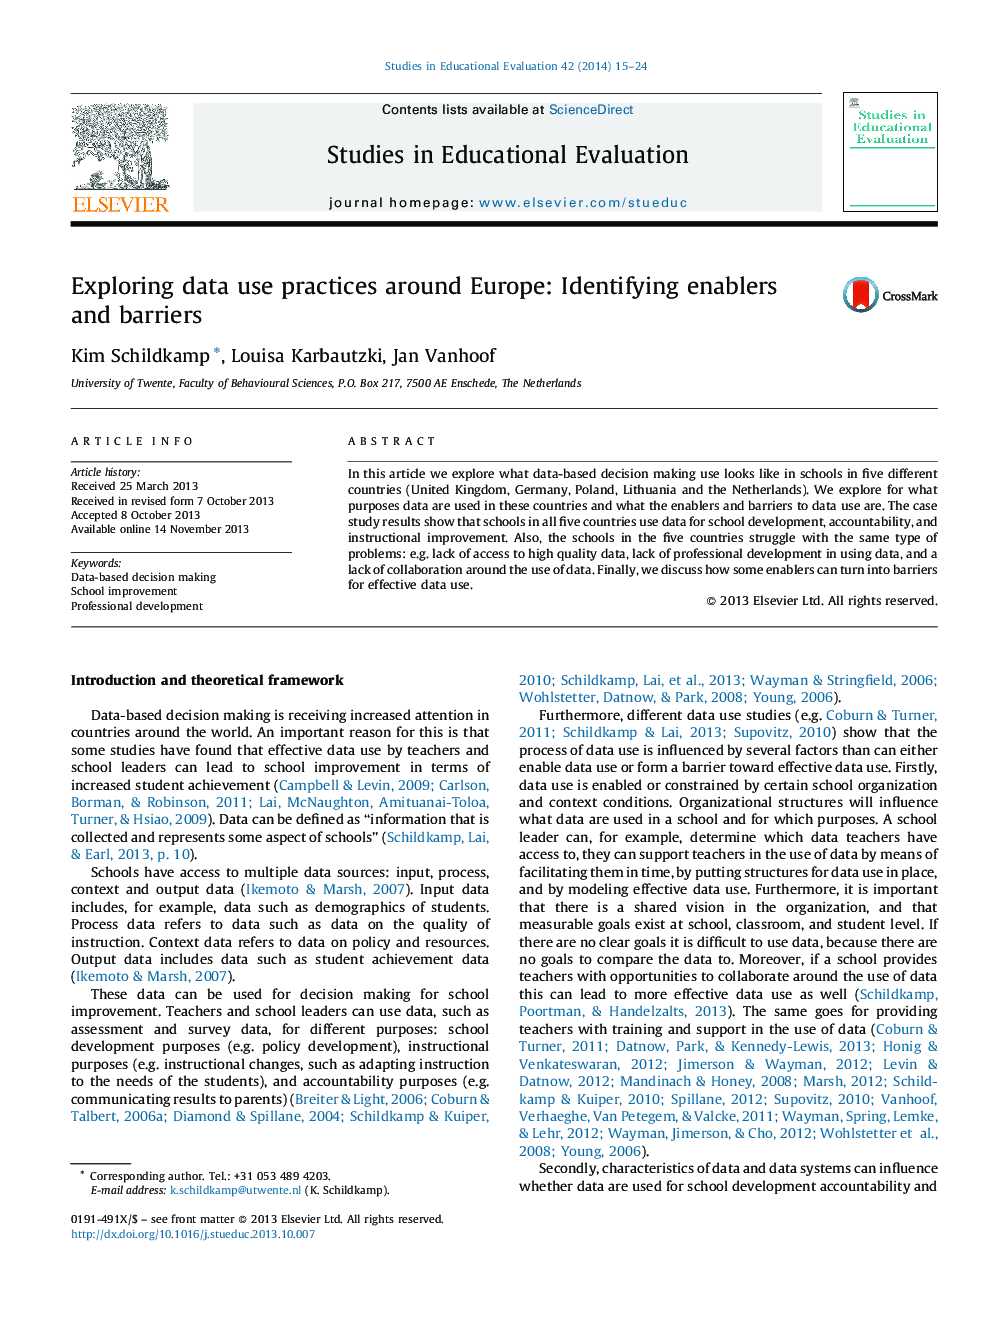 بررسی شیوه های استفاده از داده در سراسر اروپا: شناسایی توانمندسازها و موانع